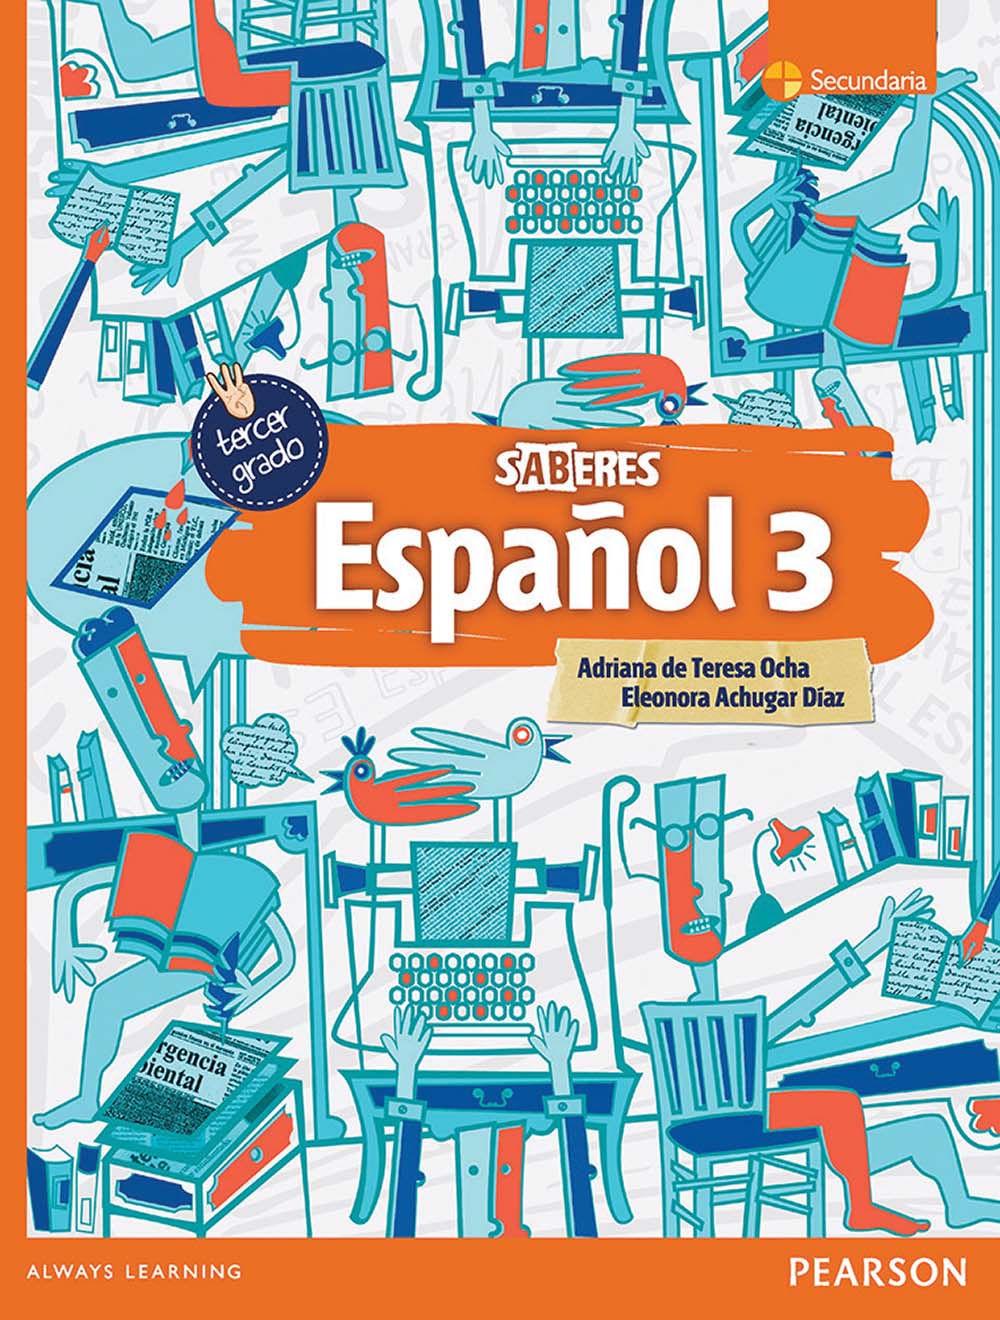 Español 3. Serie Saberes, Editorial: Pearson Educación, Nivel: Secundaria, Grado: 3